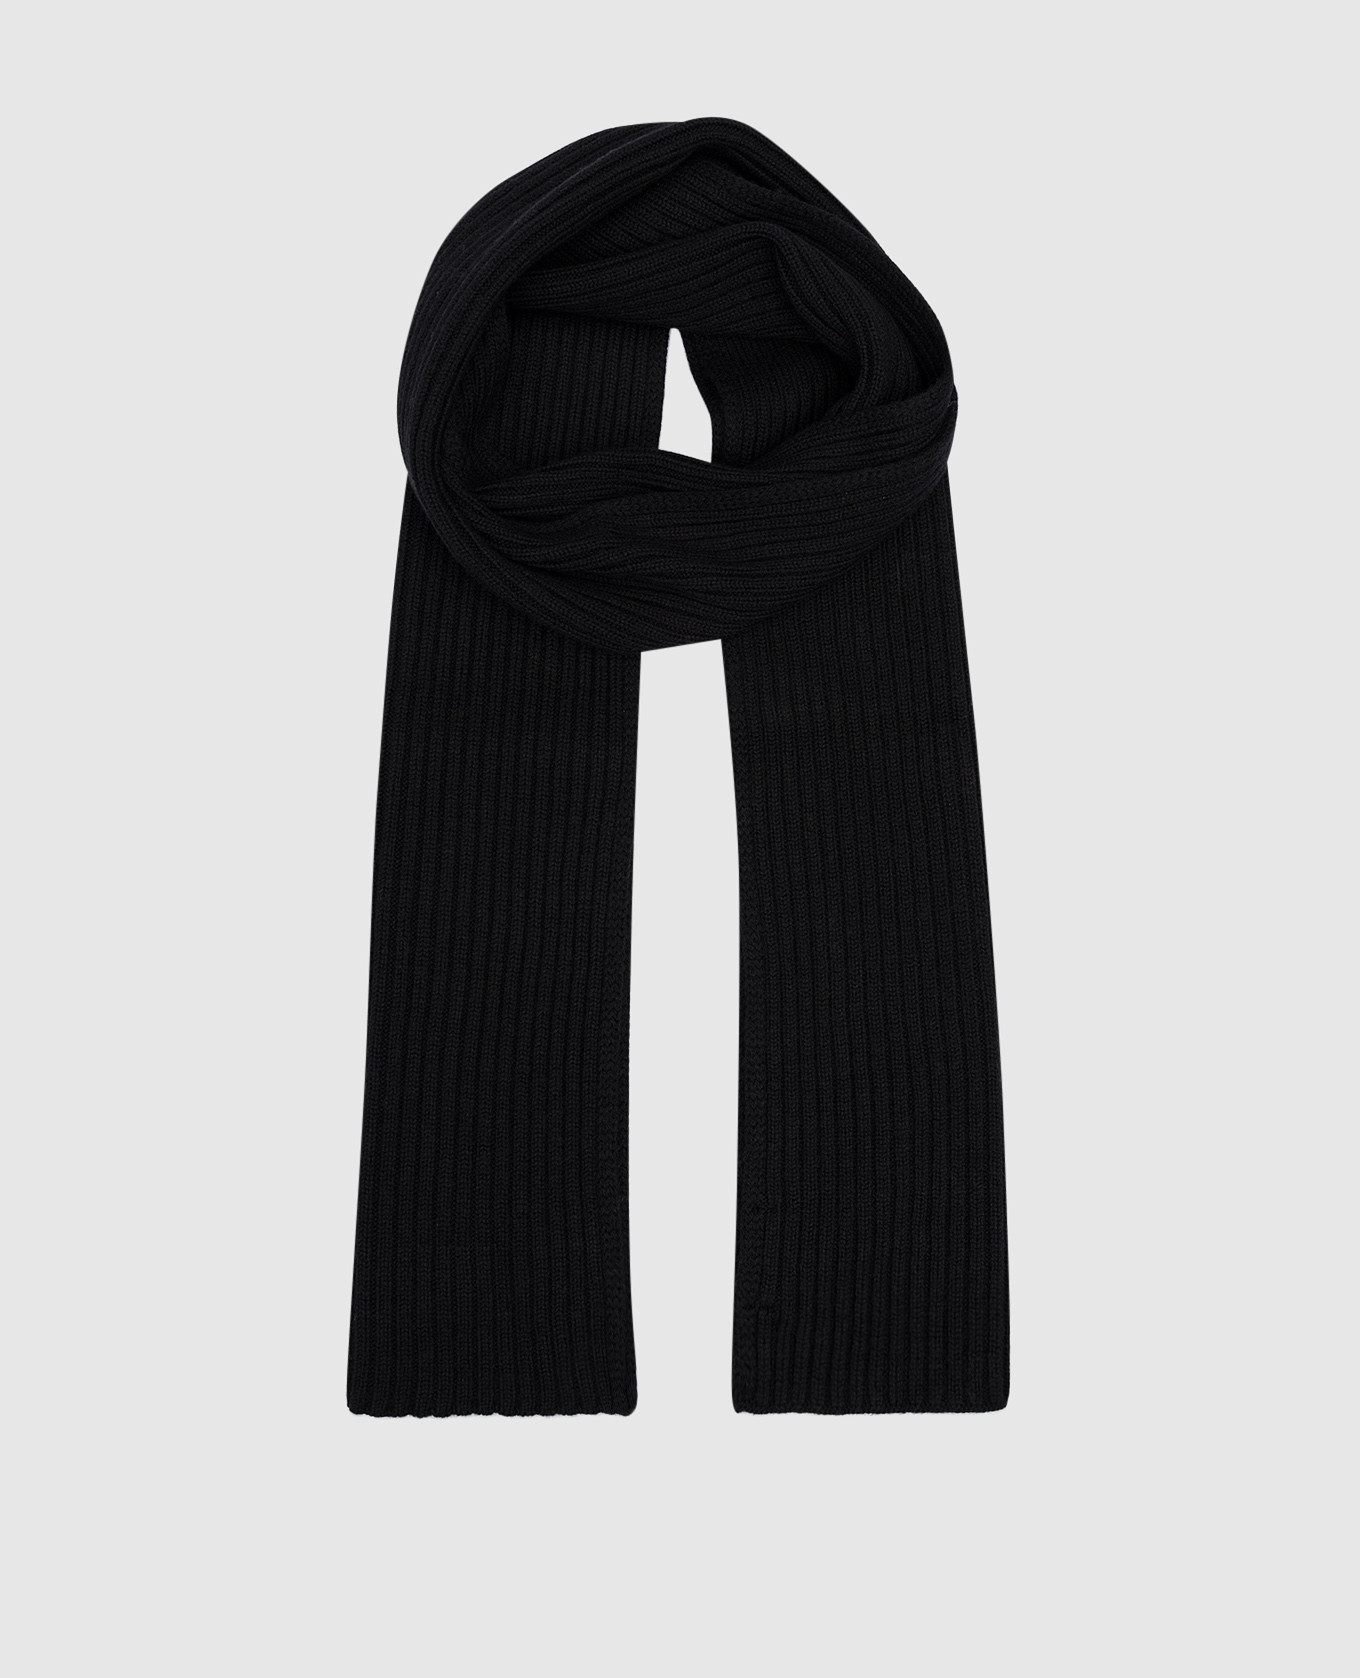 Черный шарф в рубчик из мериносовой шерсти.